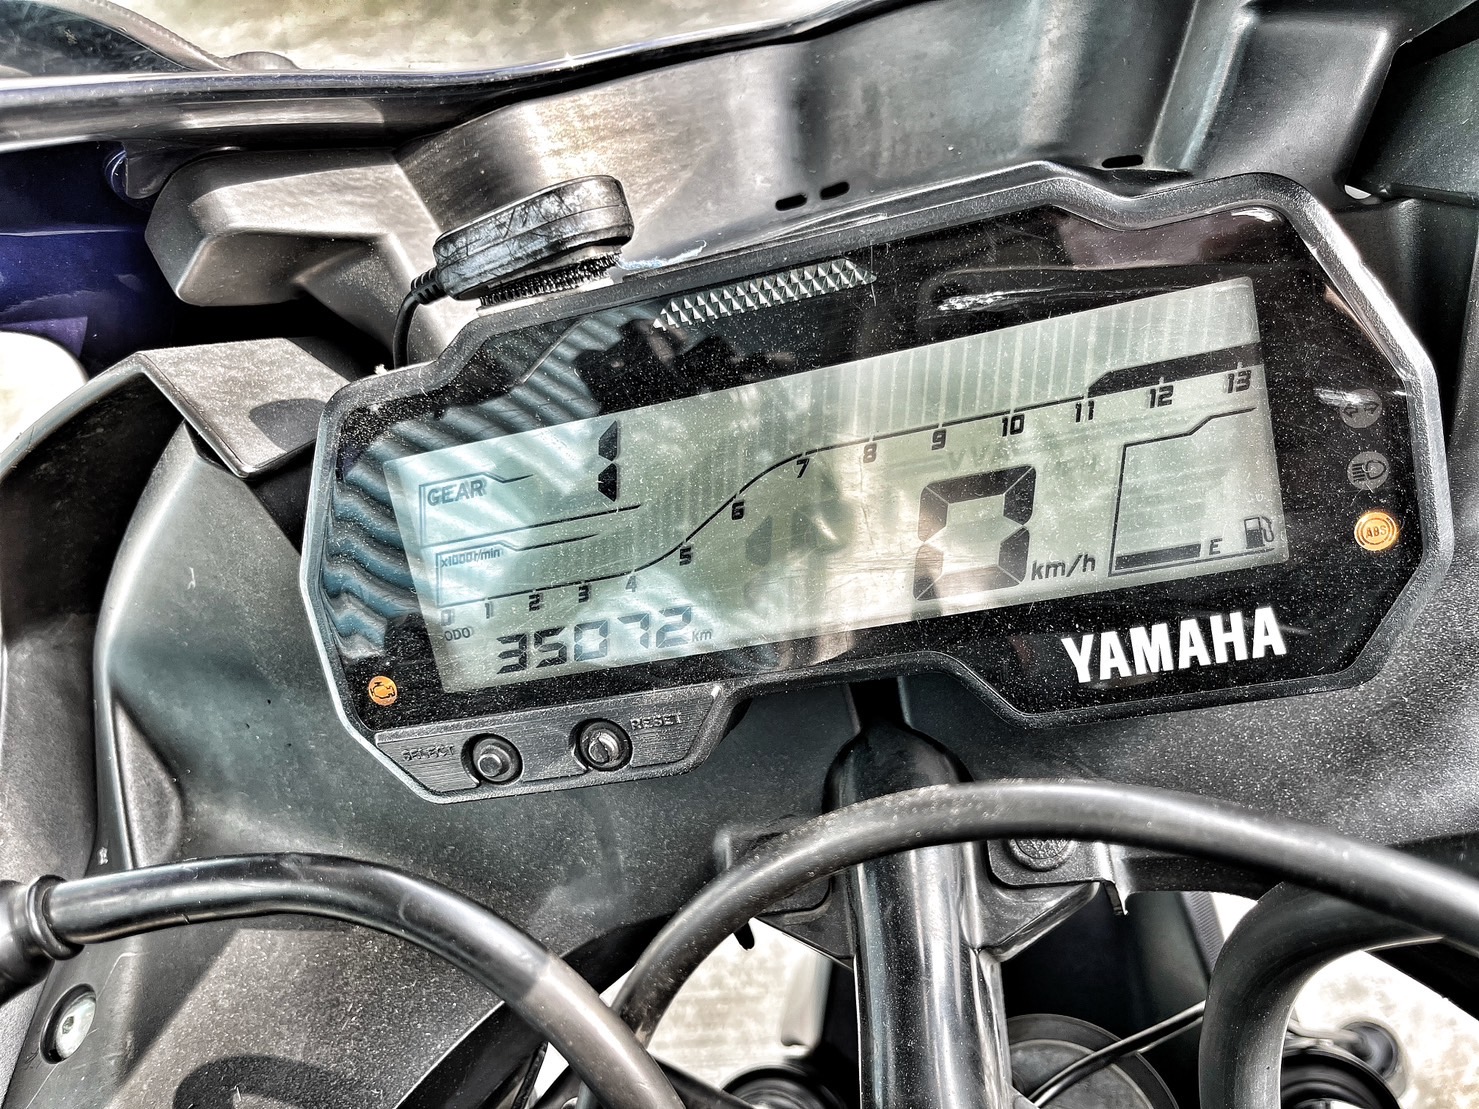 YAMAHA YZF-R15 - 中古/二手車出售中 行車記錄器 手機架 強化齒盤 基本改 小資族二手重機買賣 | 小資族二手重機買賣